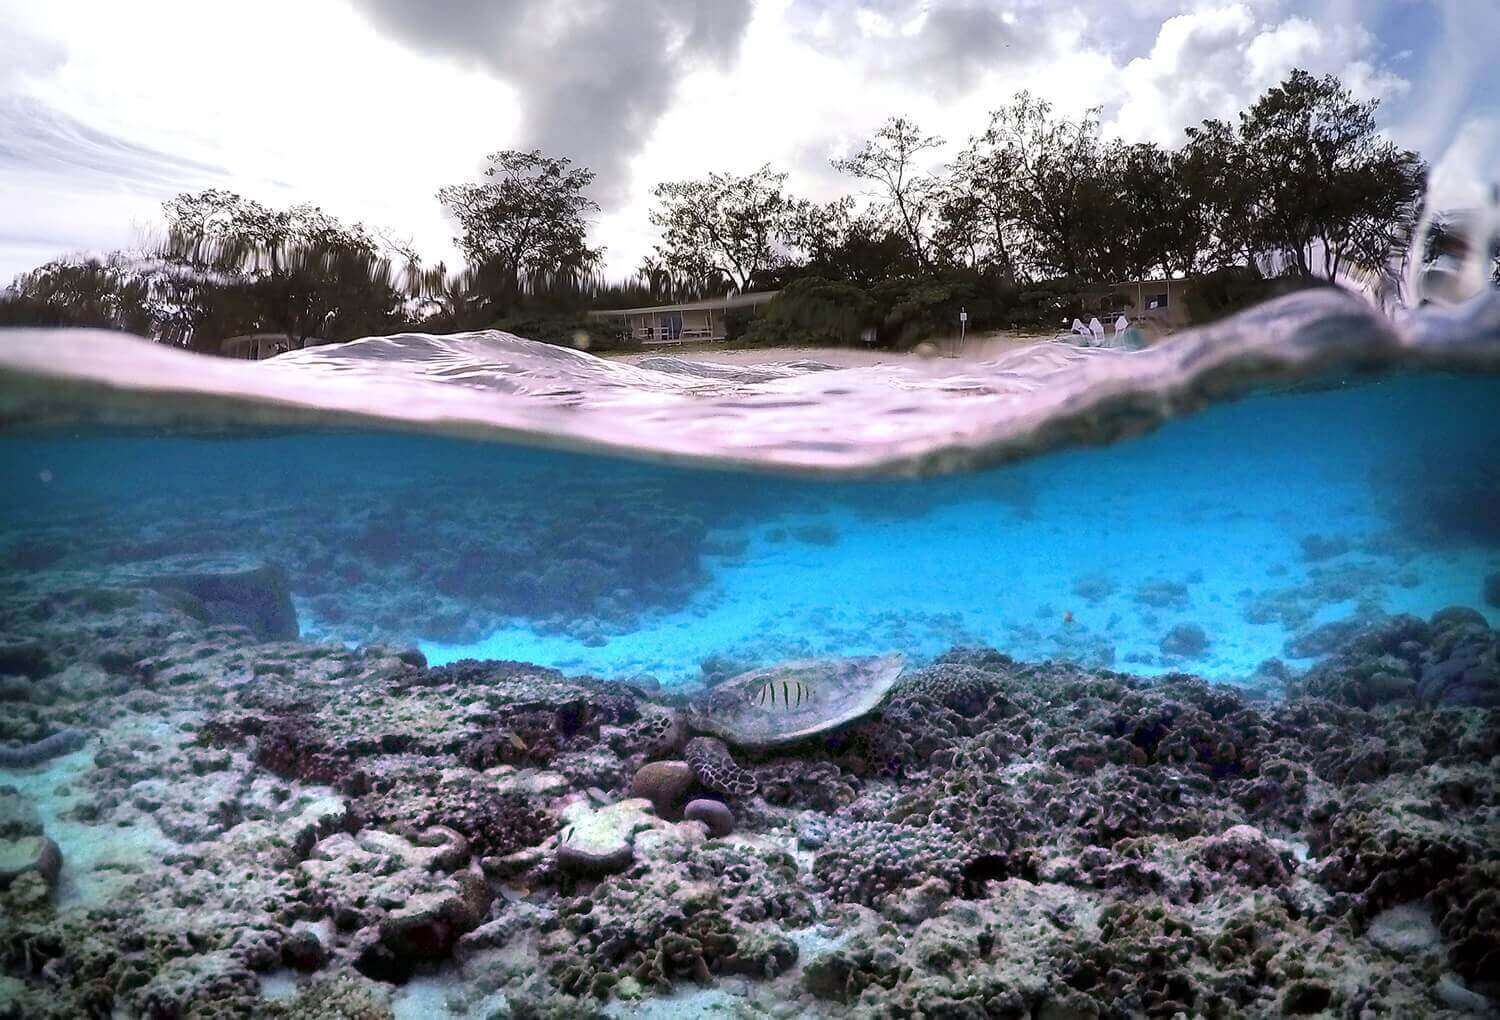 хижины экологического курорта на острове Леди-Эллиот и черепаха в лагуне в поисках пищи.